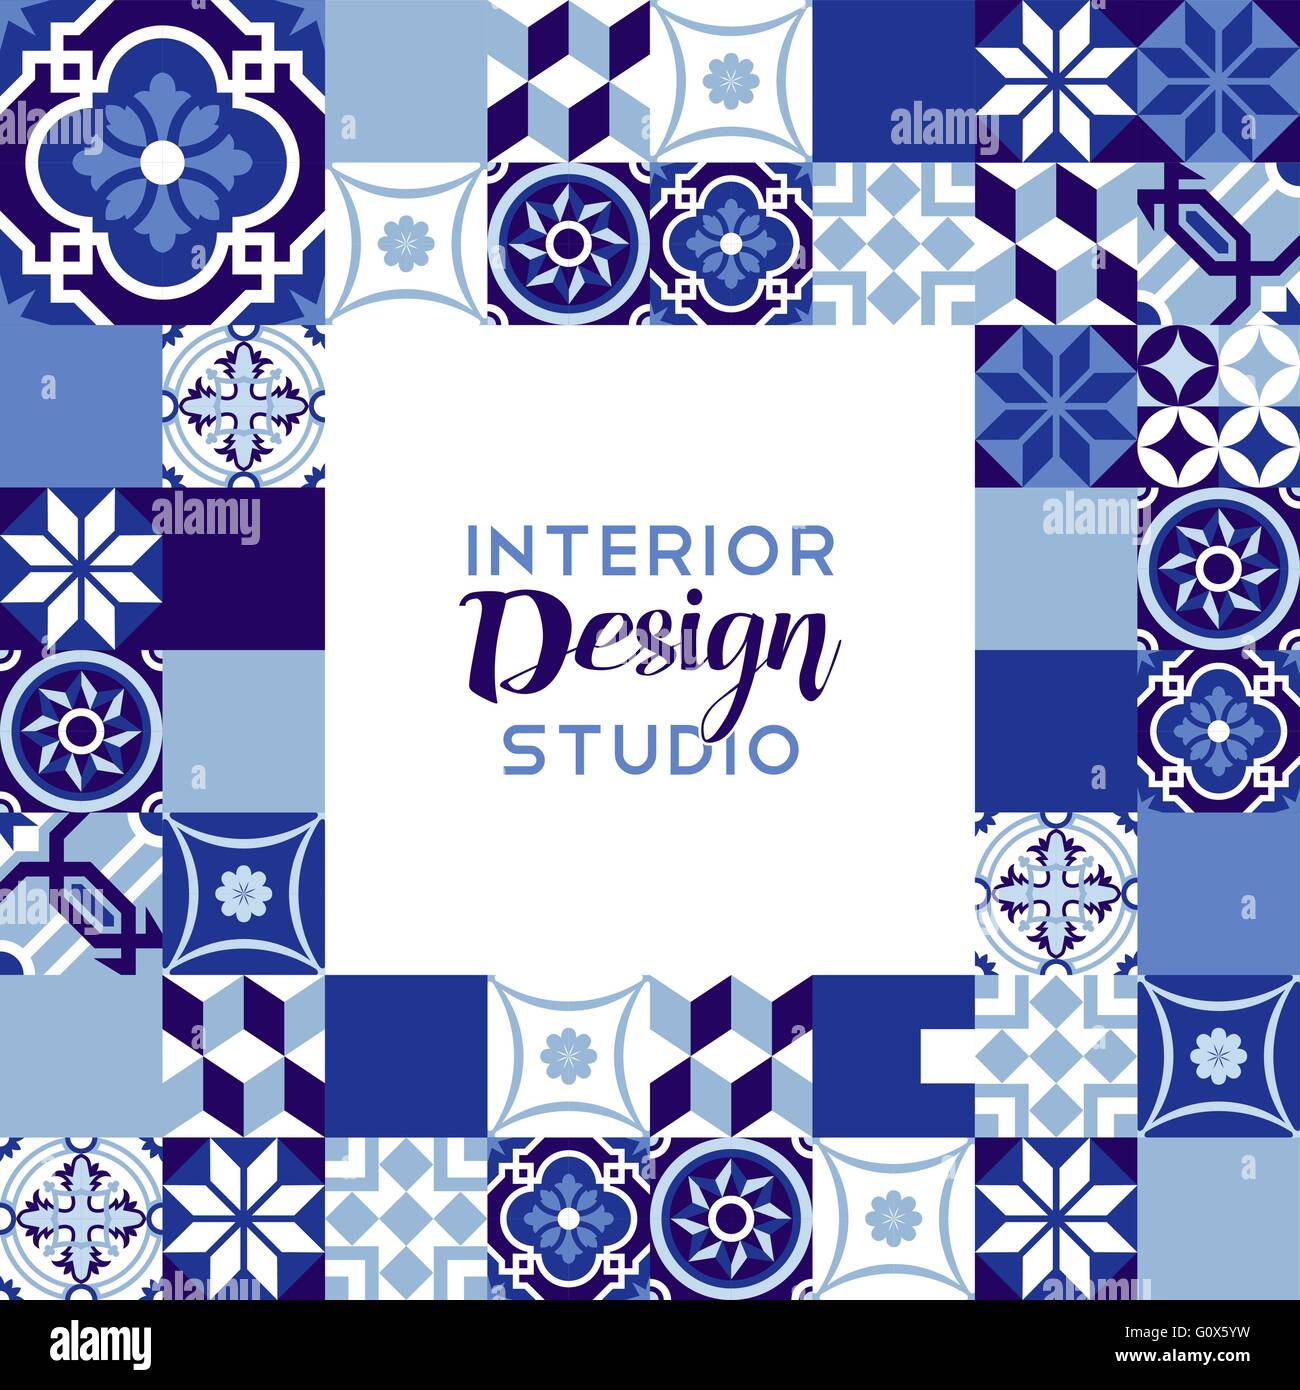 Interior design studio illustration avec carreaux de mosaïque en céramique vintage classique en décoration couleur bleu indigo. Vecteur EPS10. Illustration de Vecteur